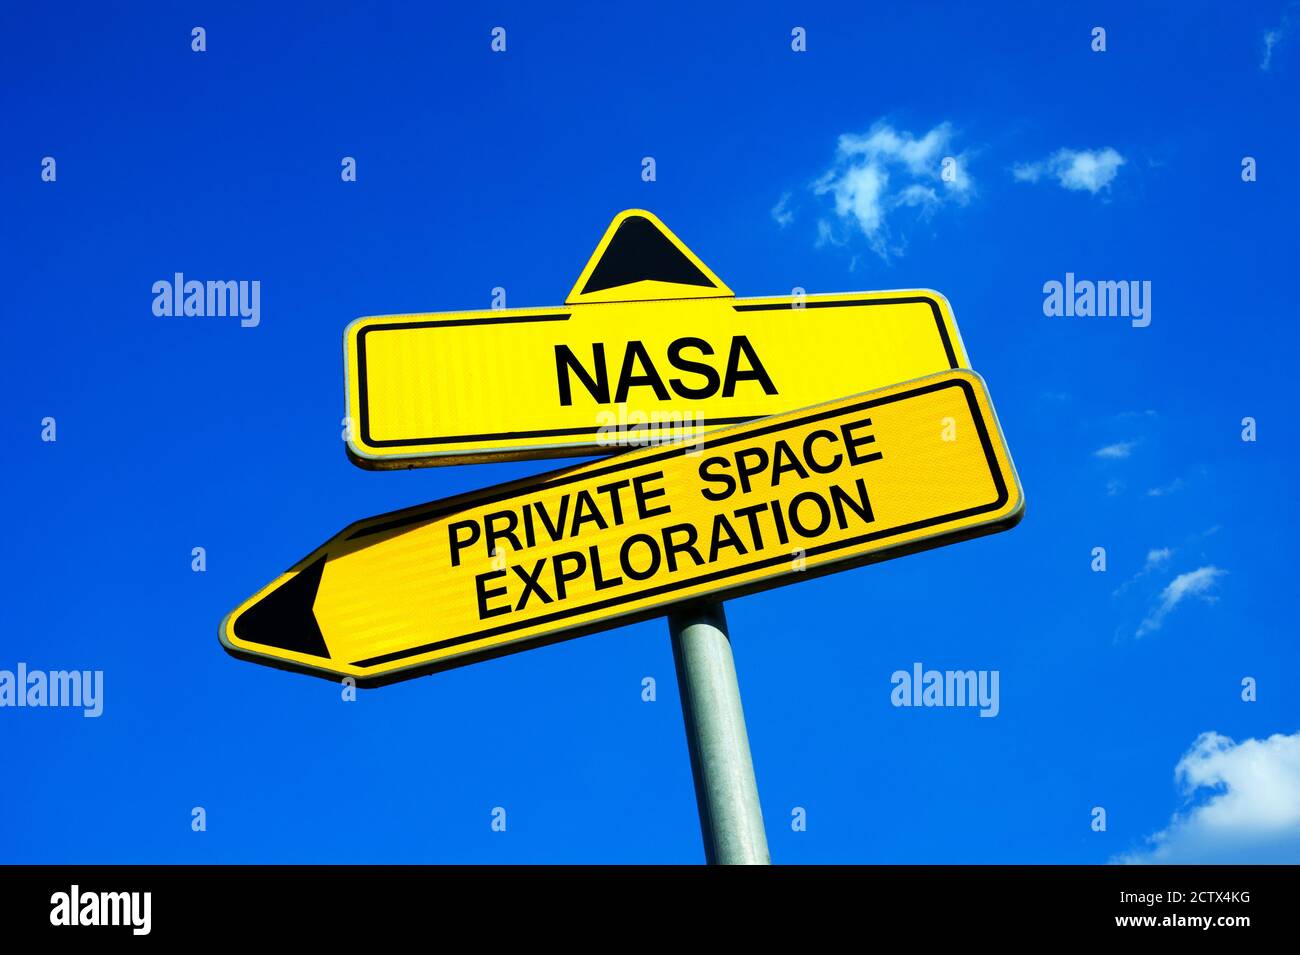 NASA oder Private Space Exploration - Verkehrsschild mit zwei Optionen - Raumfahrt und Raumfahrt organisiert und von der Regierung entwickelt Im Vergleich zu Innovationen Stockfoto